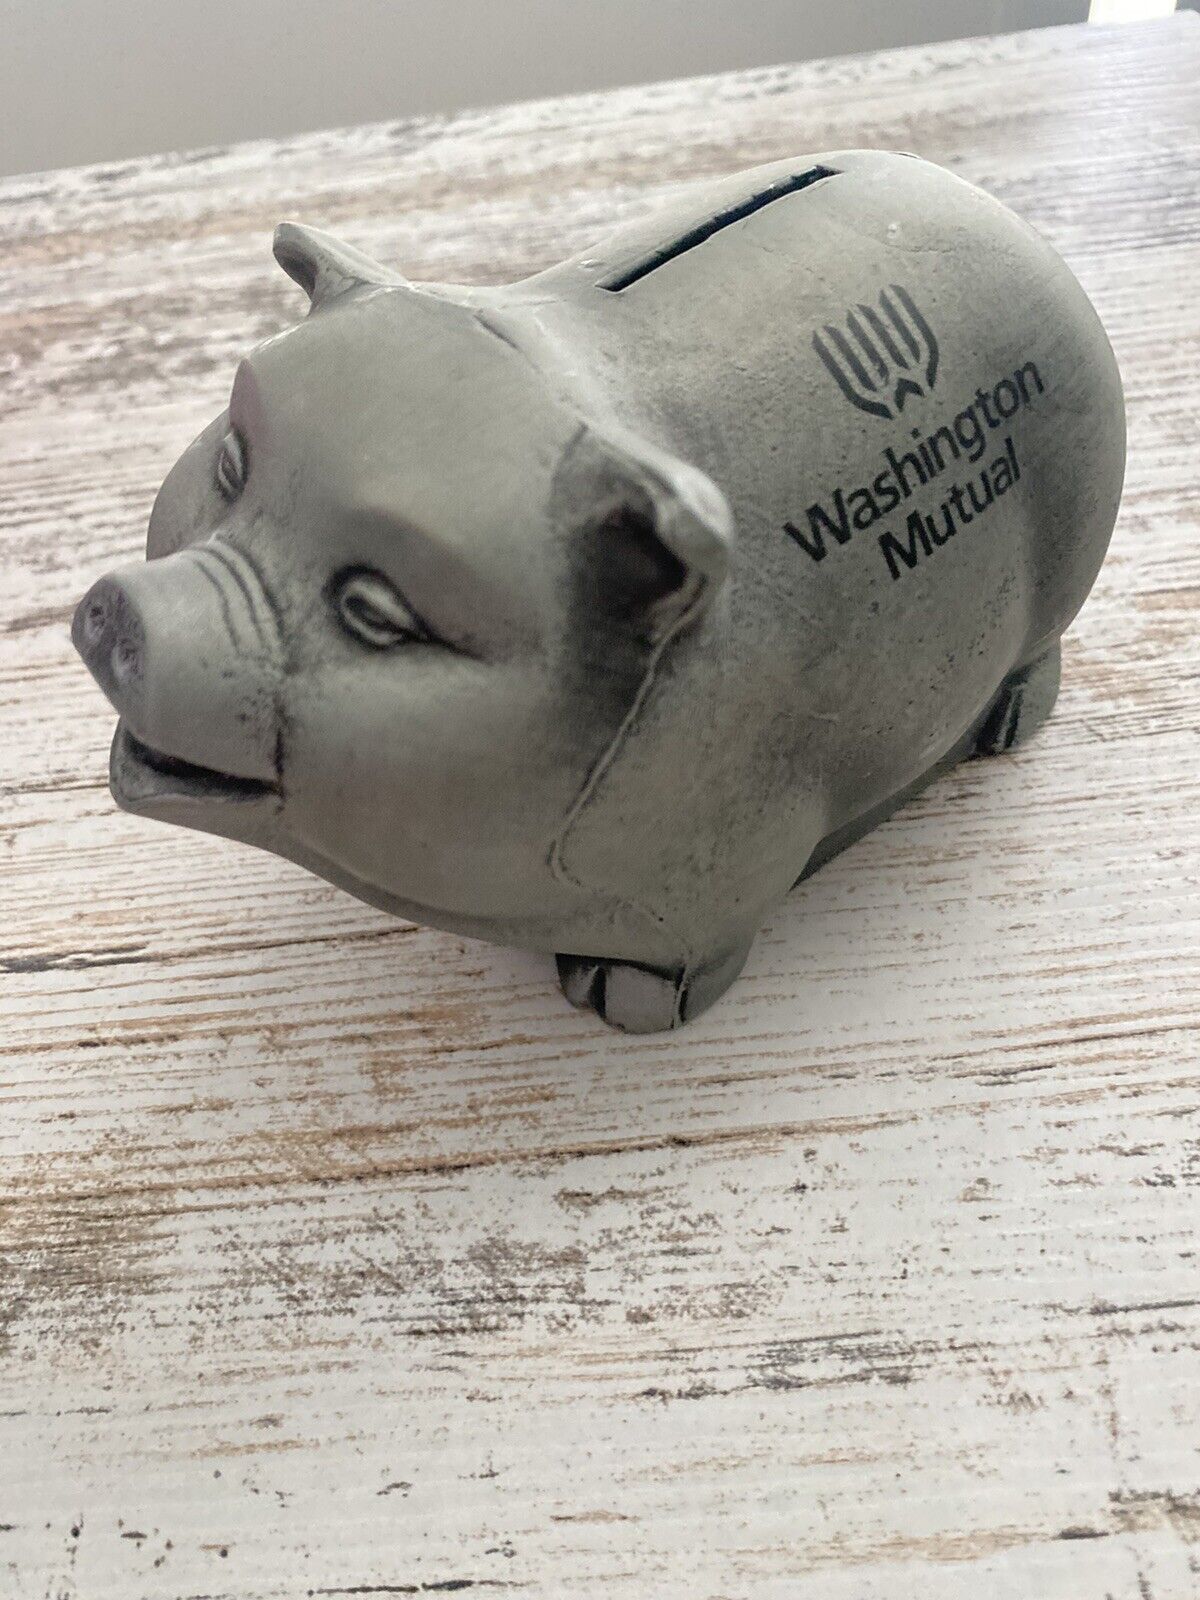 Metal Piggy Bank Washington Mutual Bank- Rare vintage find savings bank 1974